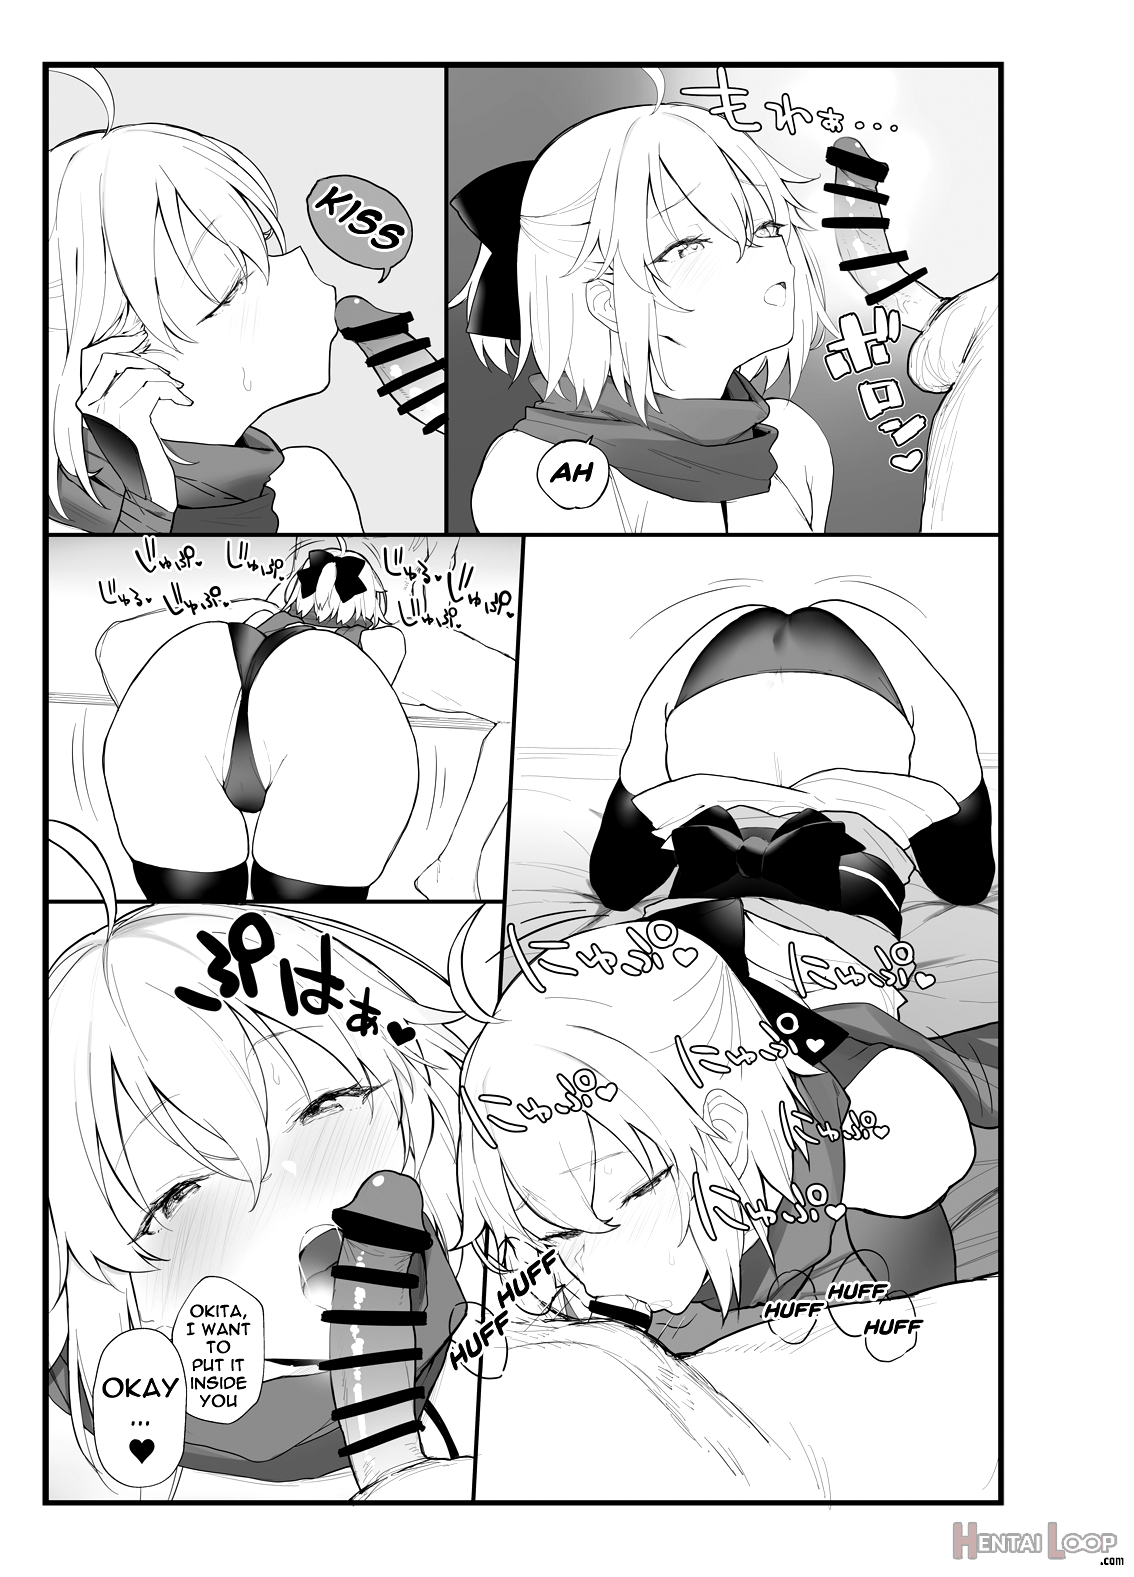 Okita-san's Book page 6